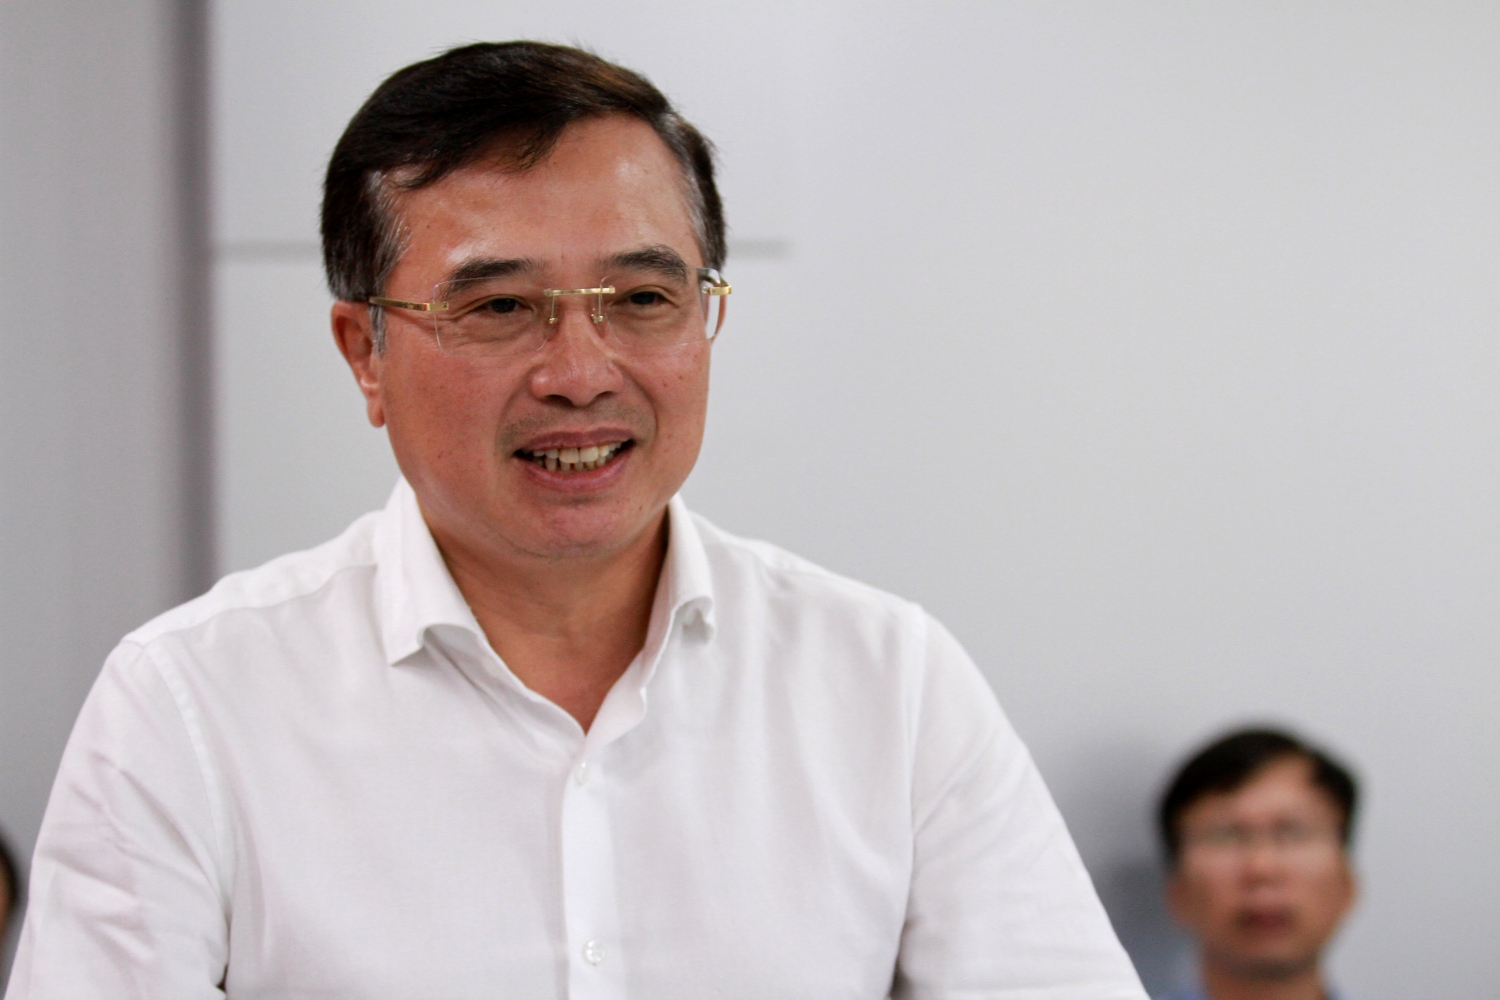 Phó Thủ tướng Lê Minh Khái: Sớm hoàn thiện đề án xử lý các tồn tại ở DQS